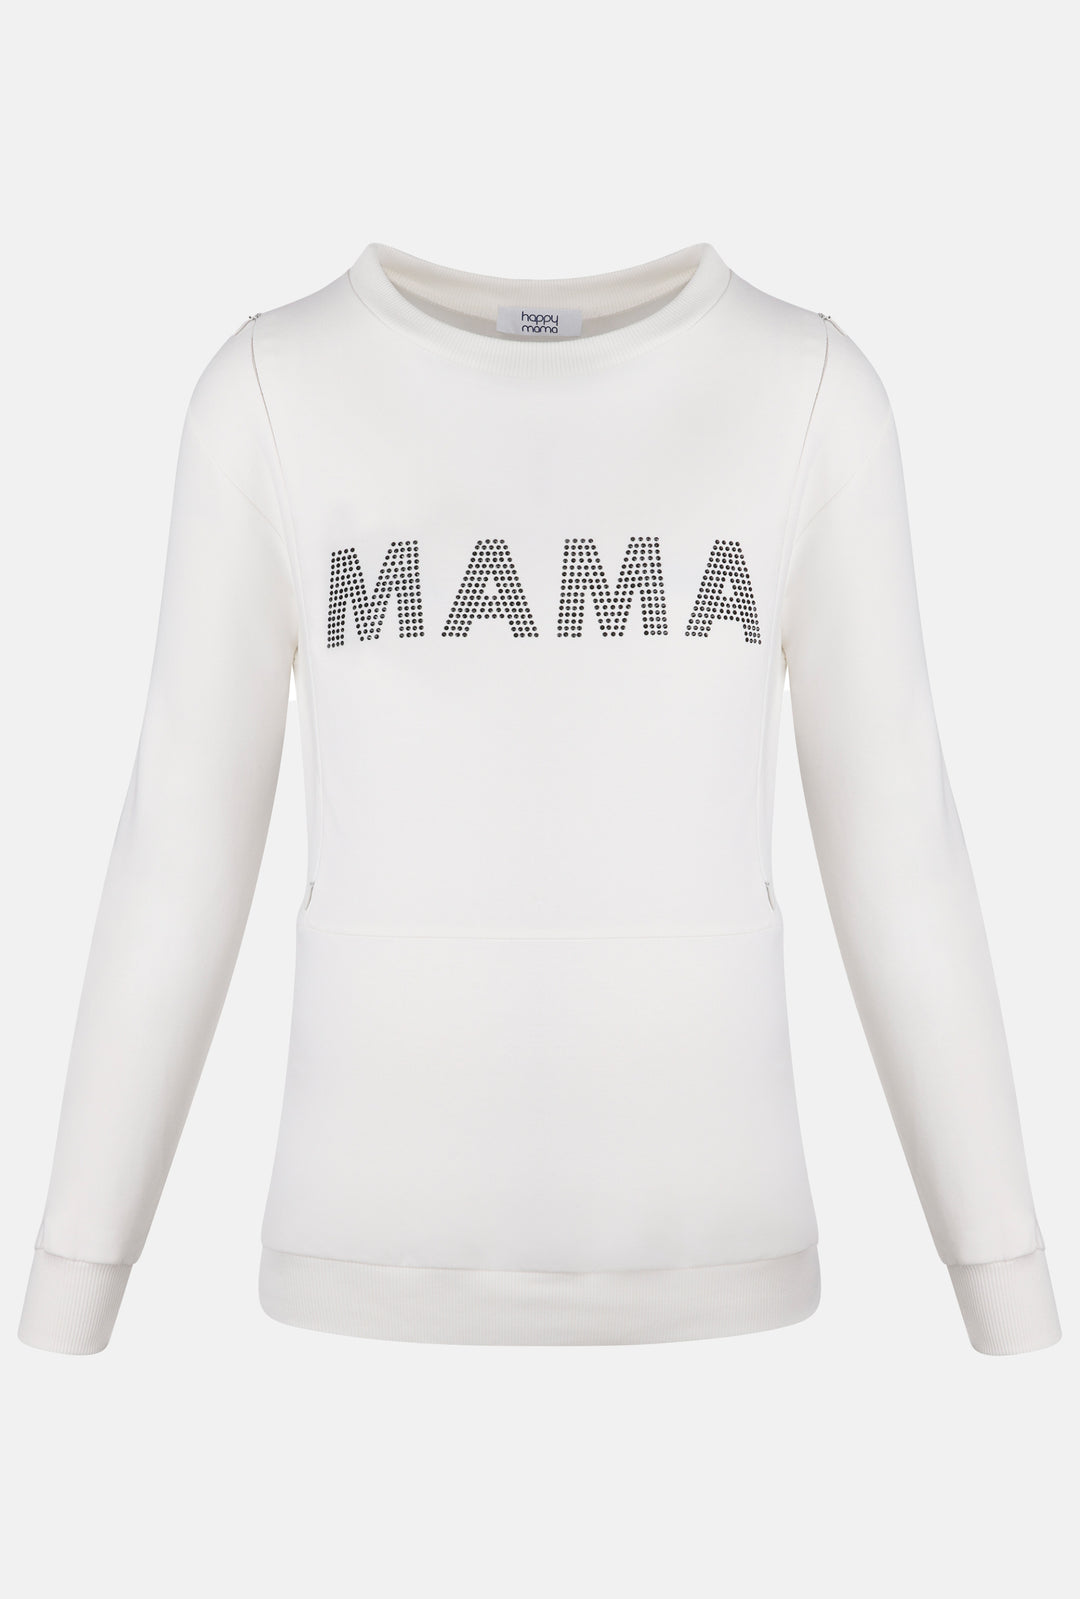 Bluza Ciążowa z Błyszczącym Napisem "MAMA"